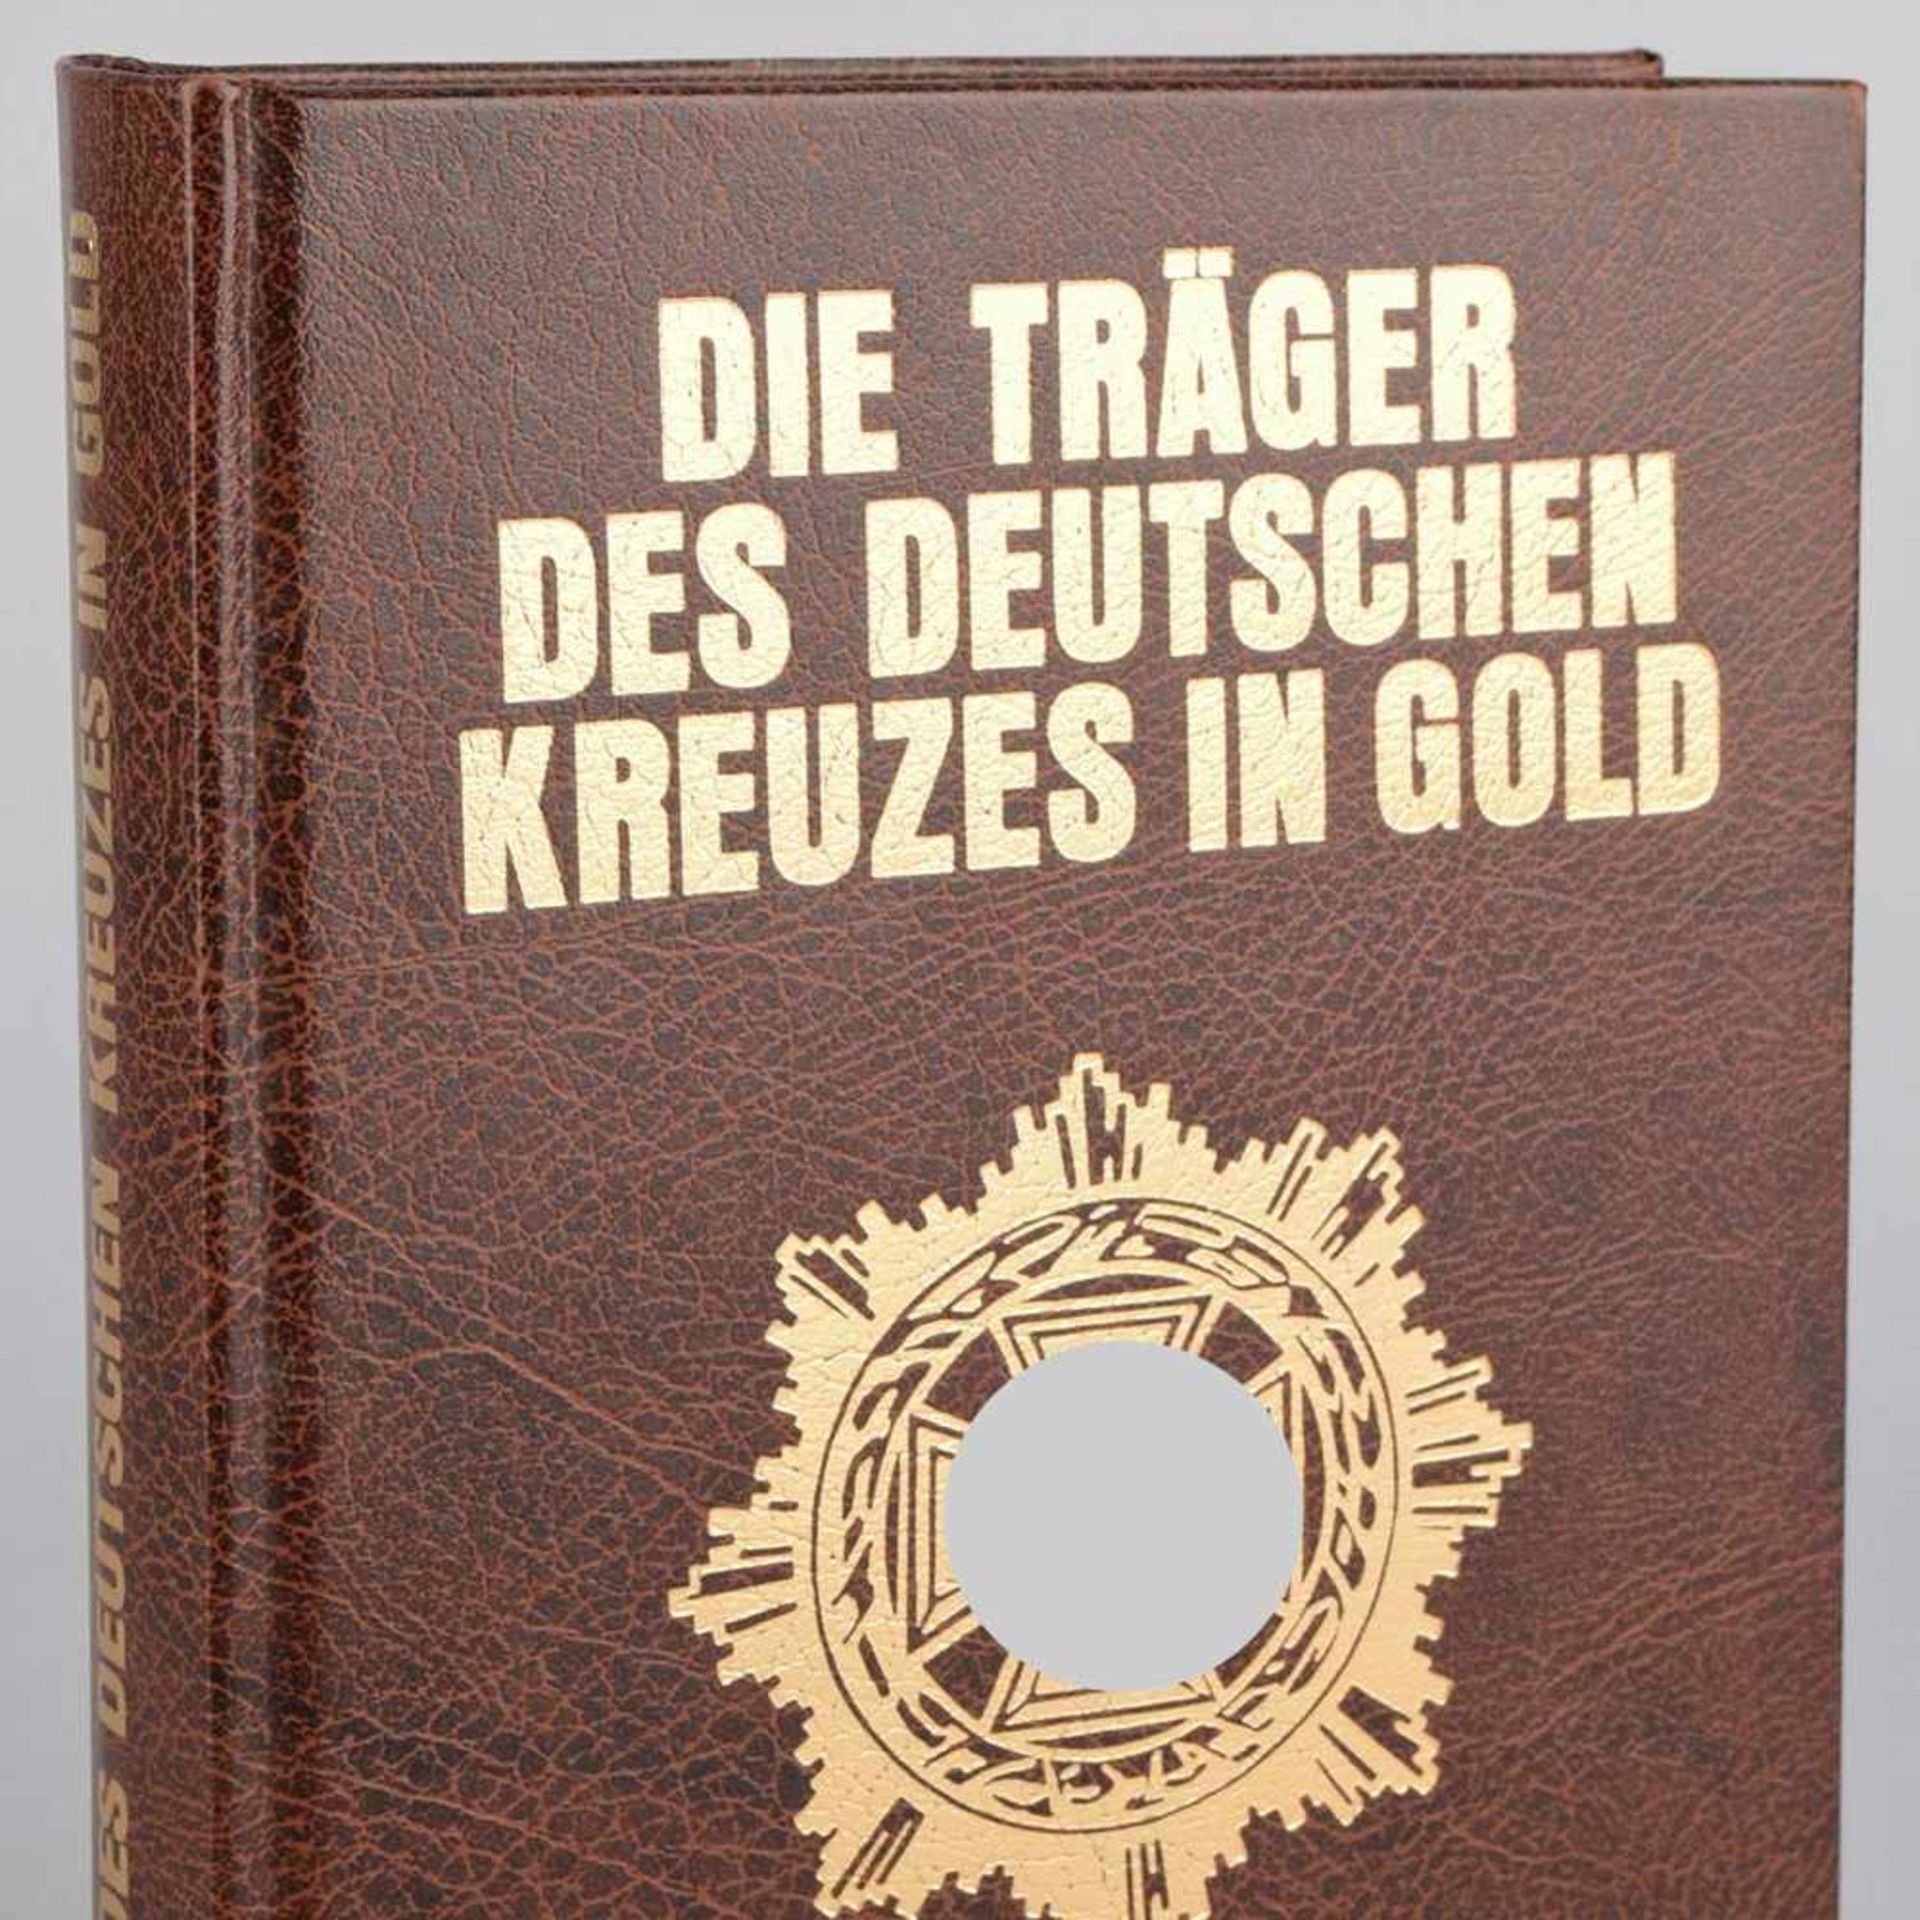 Scheibert, Horst "Die Träger des Deutschen Kreuzes in Gold. Das Heer", Friedberg: Podzun-Pallas